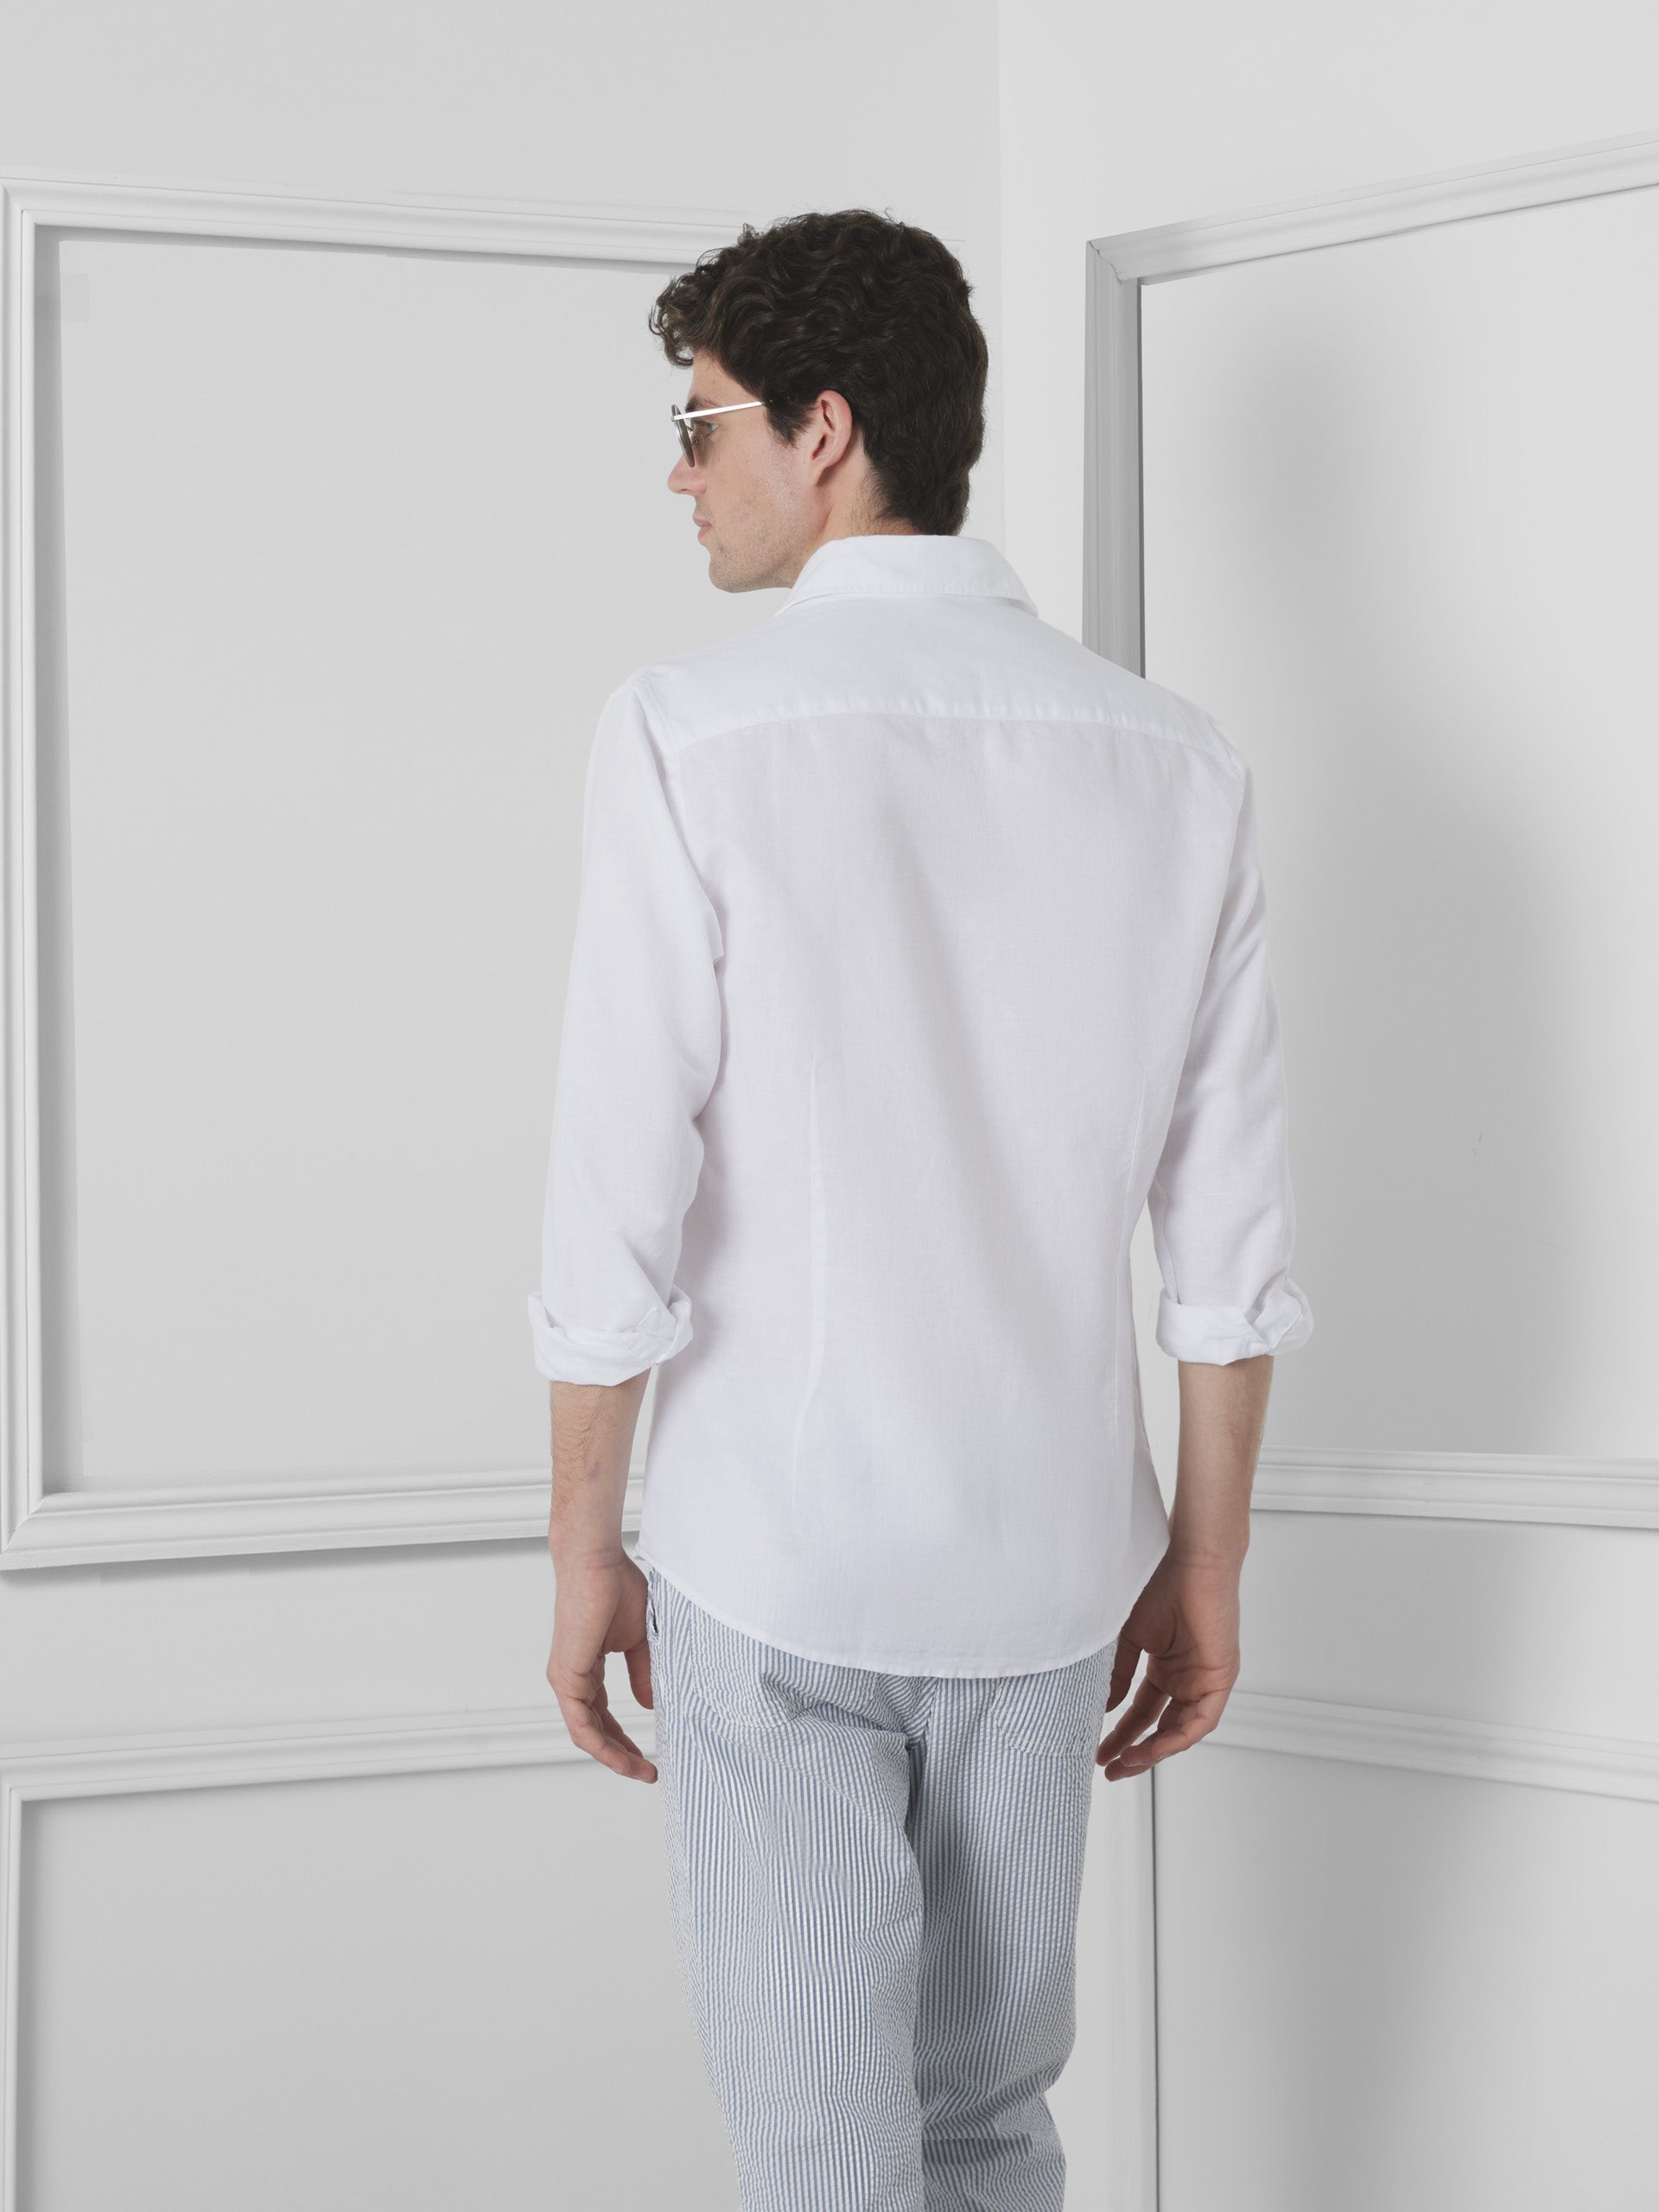 Unique white linen dress shirt